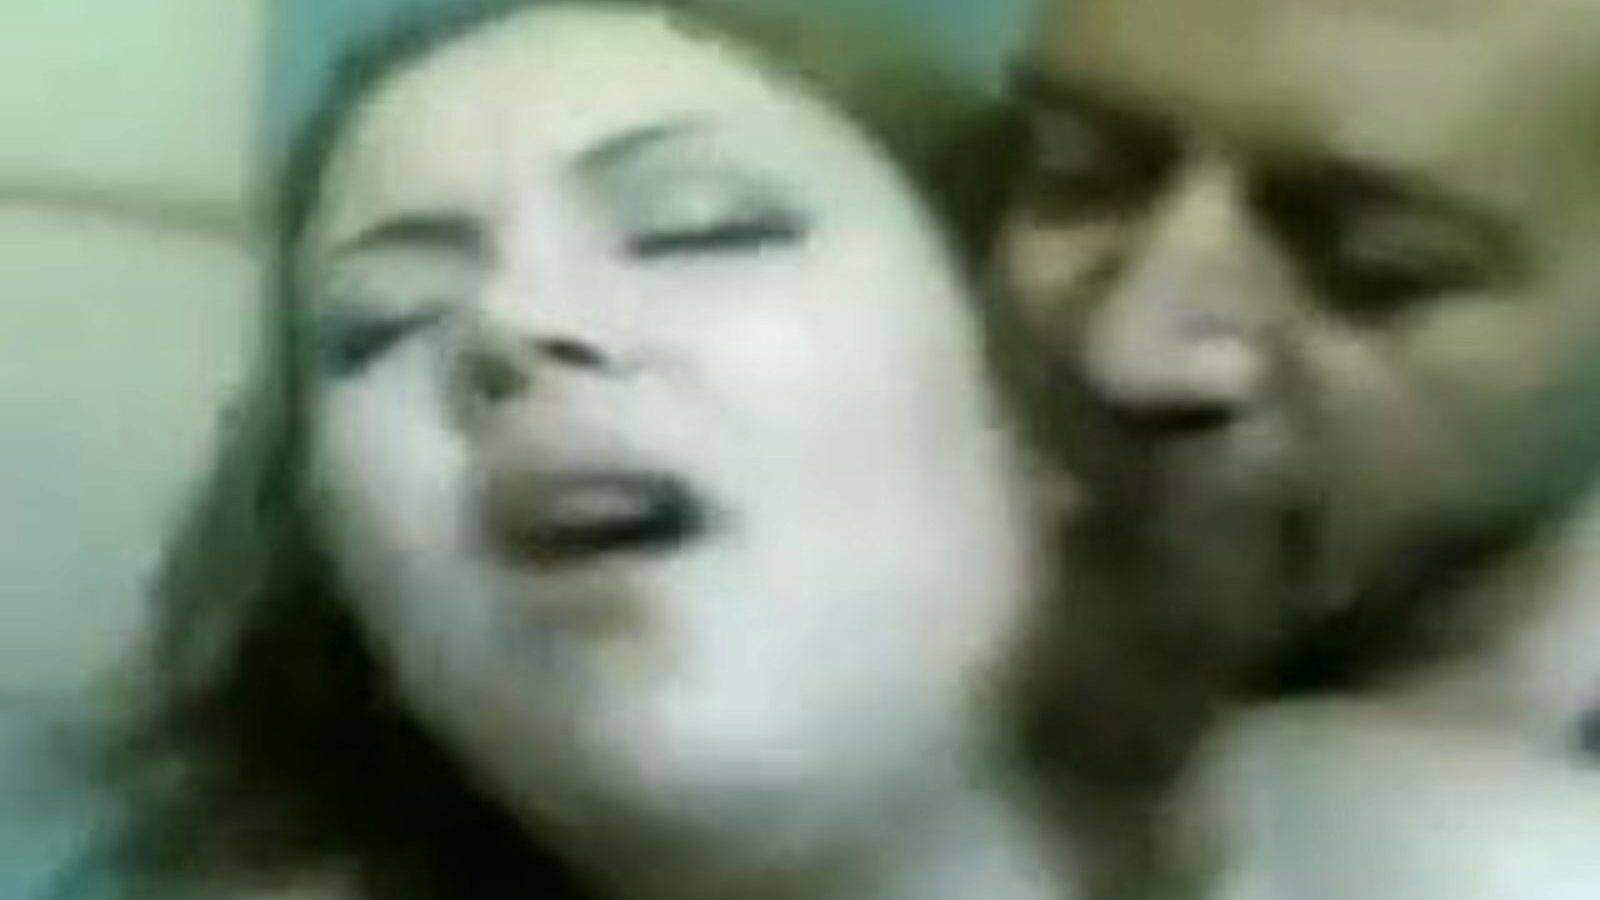 мадаме лили: бесплатни шездесет и девет порно видеа 07 - кхамстер гледајте мадаме лили тубе клип за вођење љубави бесплатно на свима на кхамстер-у, са супериорним египатским арапским, 69 и великим порно магазинима